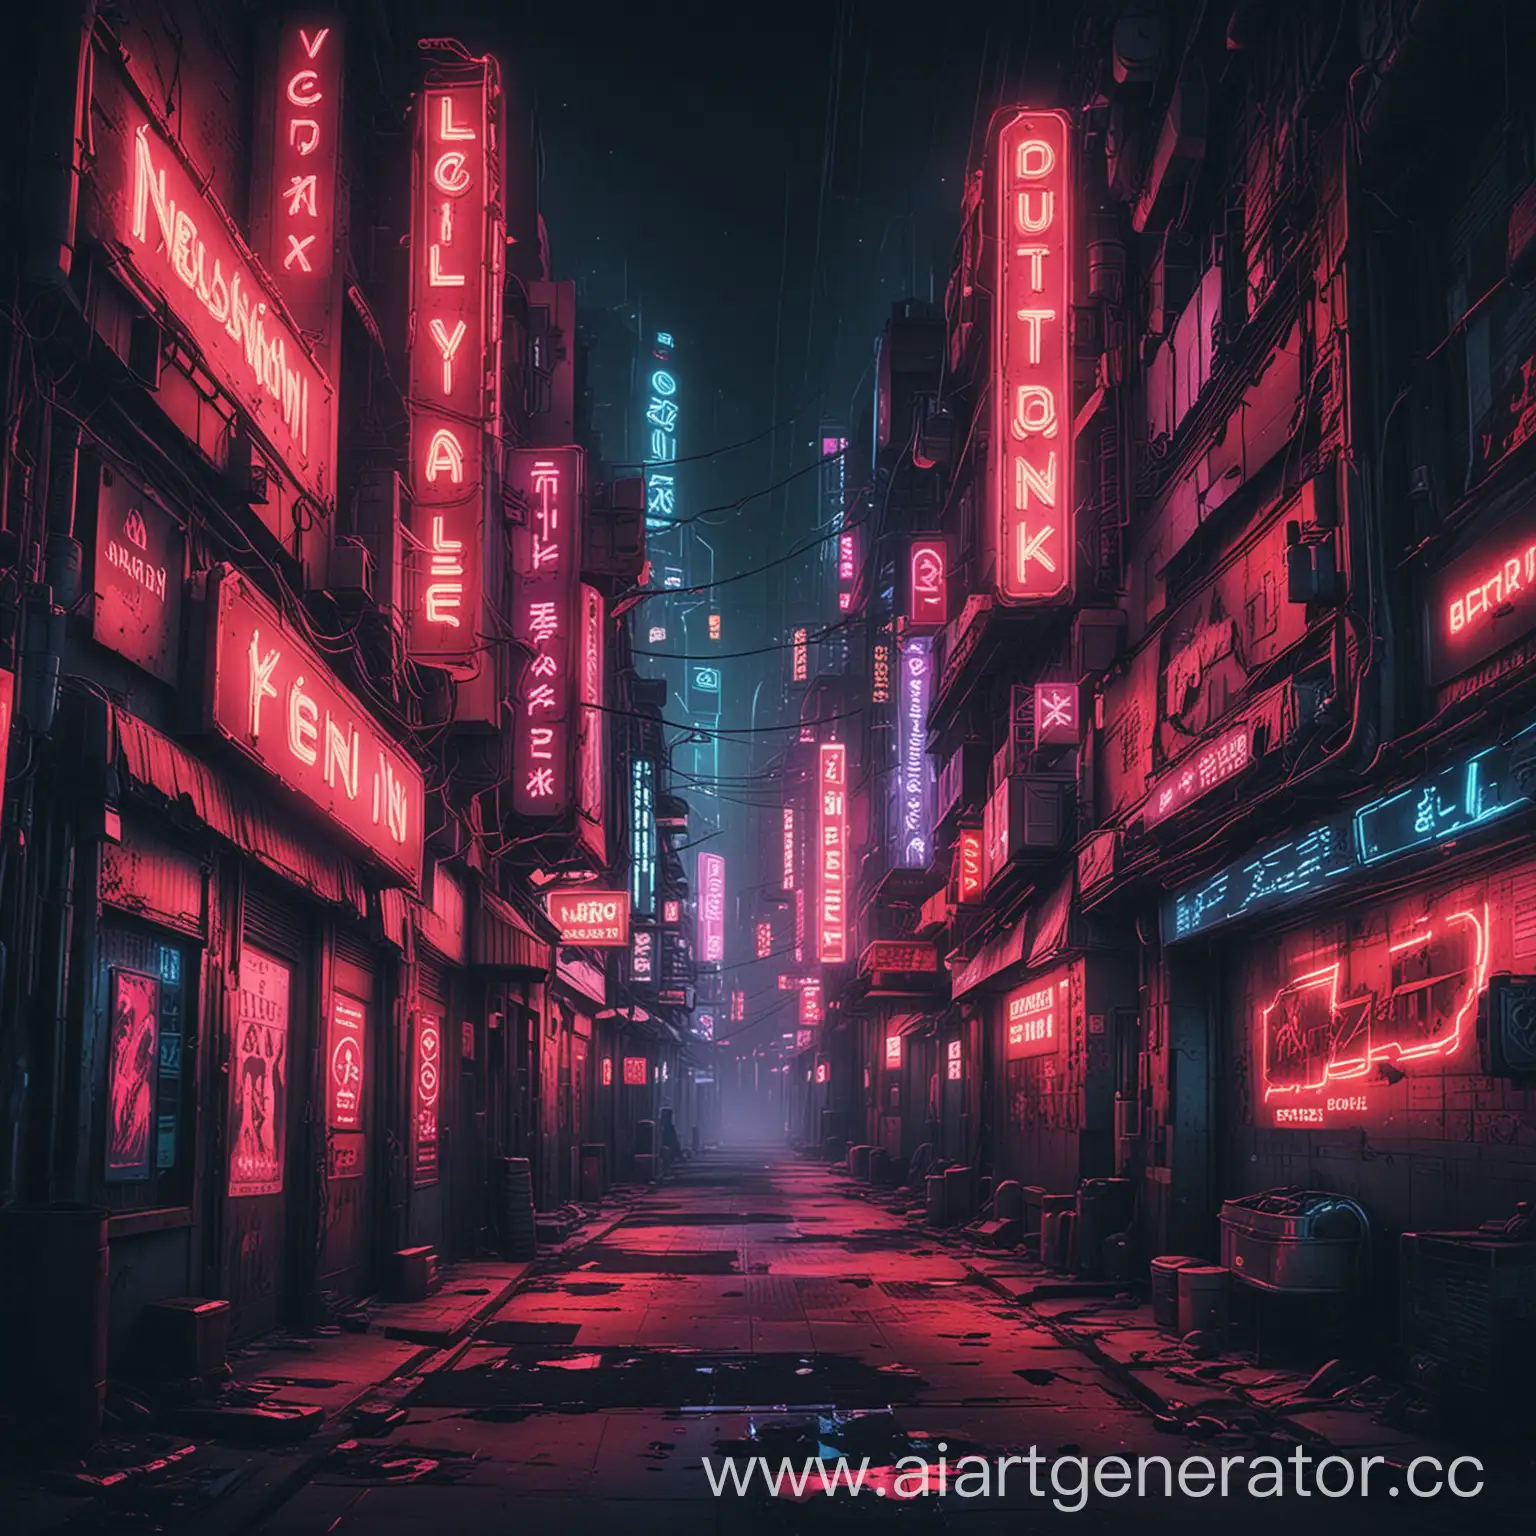 Futuristic-Cyberpunk-Cityscape-with-Neon-Signs